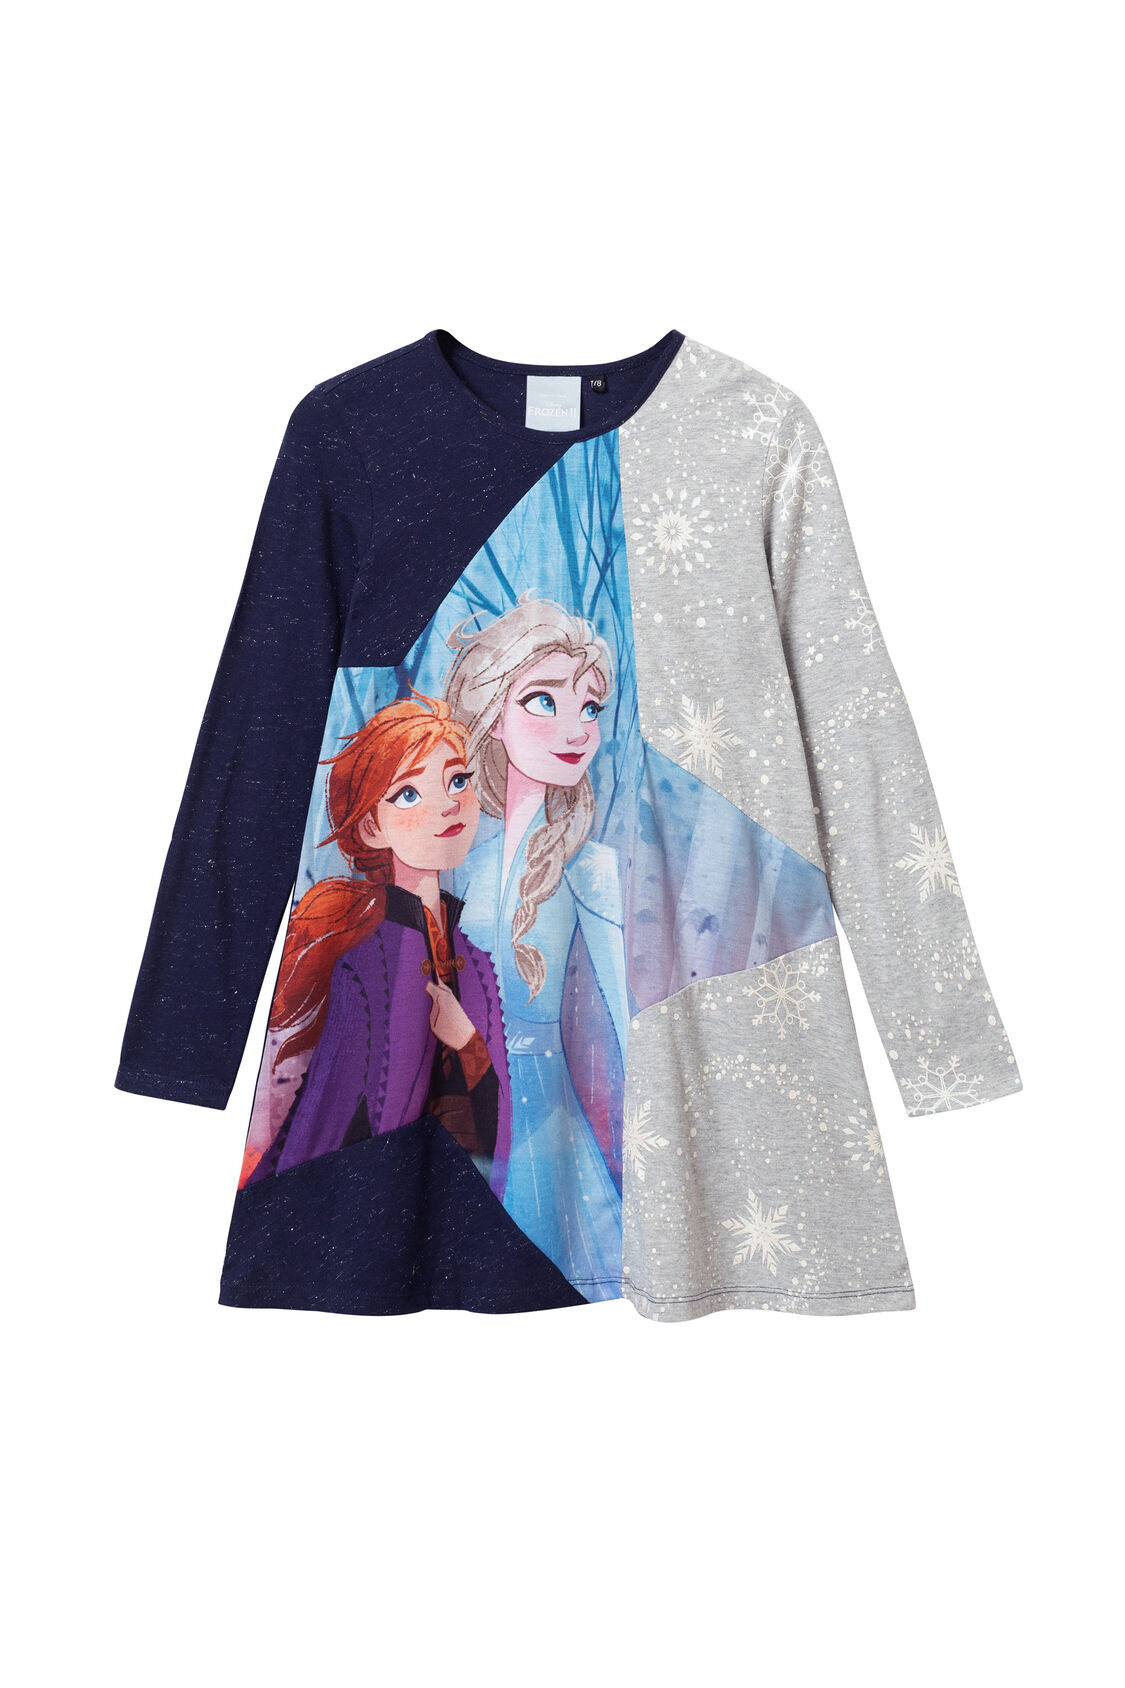 Atrás, atrás, atrás parte Microprocesador Sinceramente Elsa and Anna "Frozen II" Dress